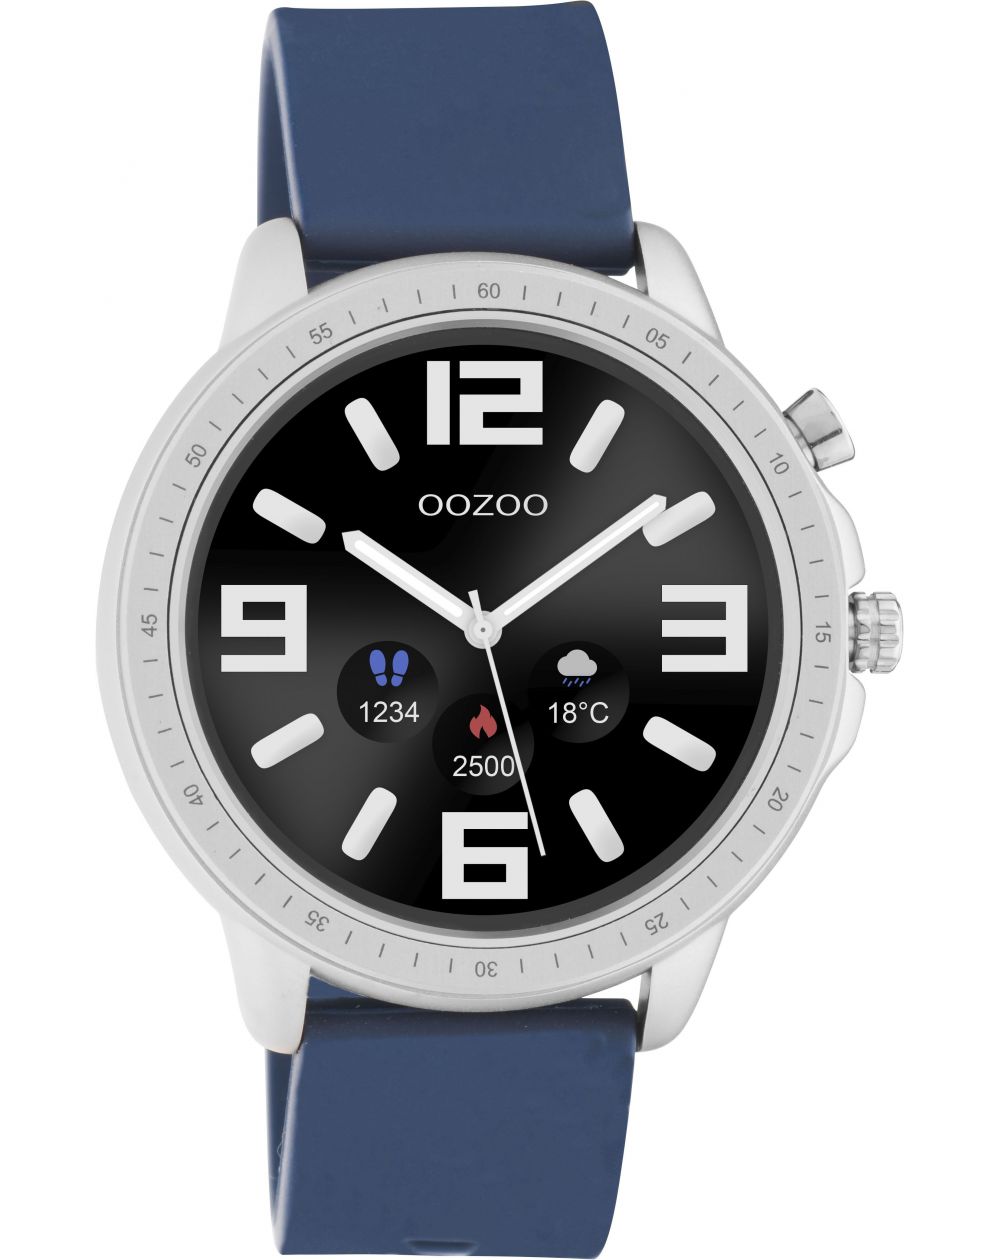 Montre Oozoo Q00315 - Smartwatch - Marque OOZOO - Livraison gratuite